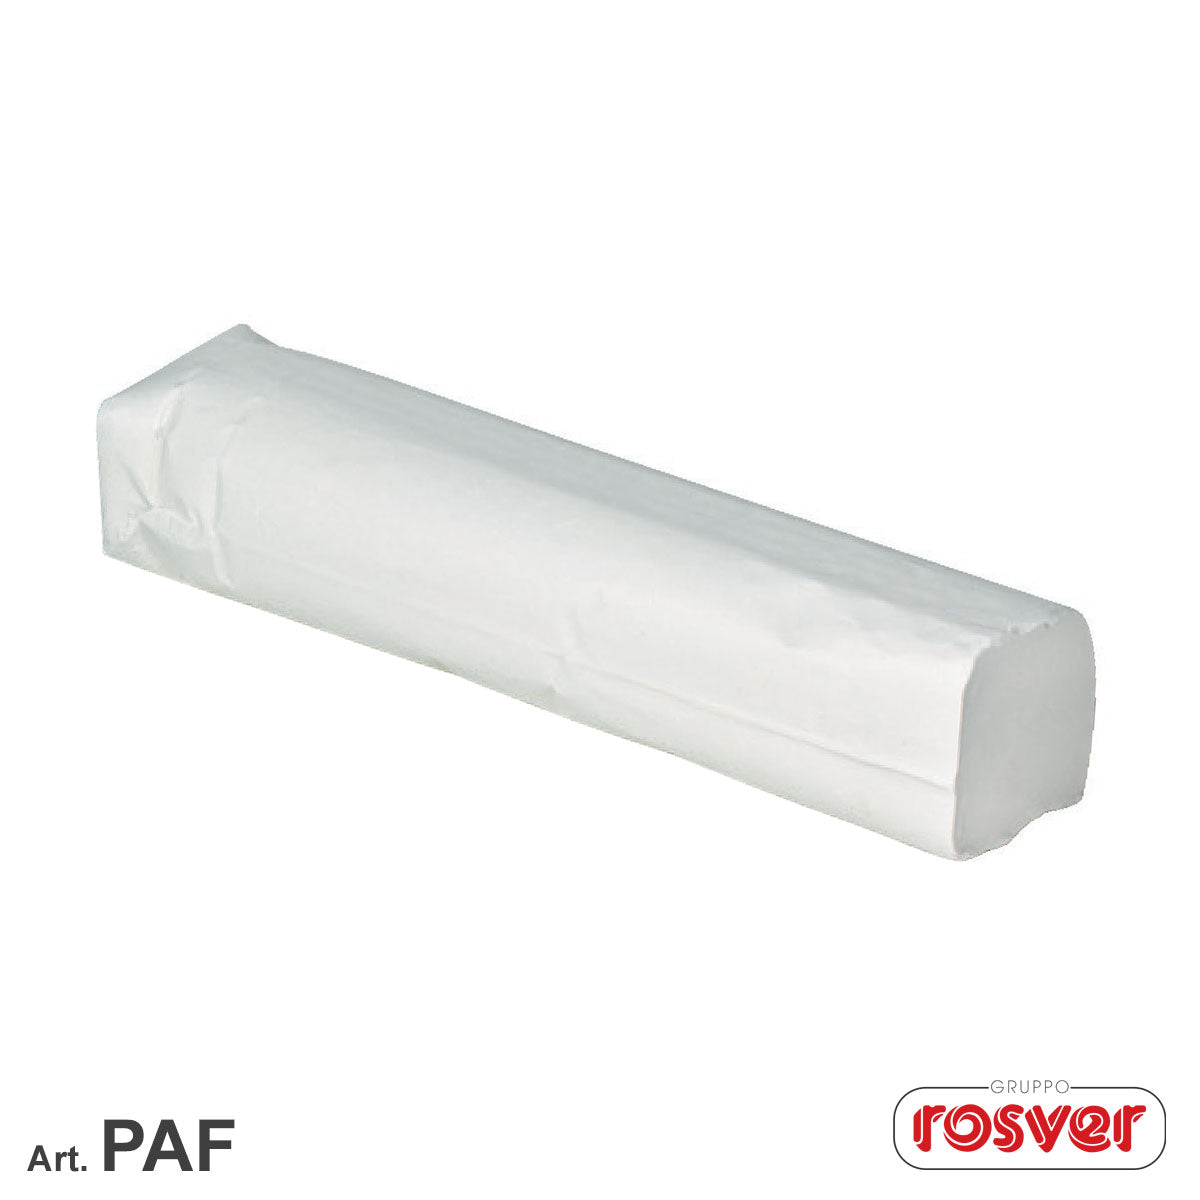 Abrasive paste for marble - Rosver - PAF - Conf.4pz